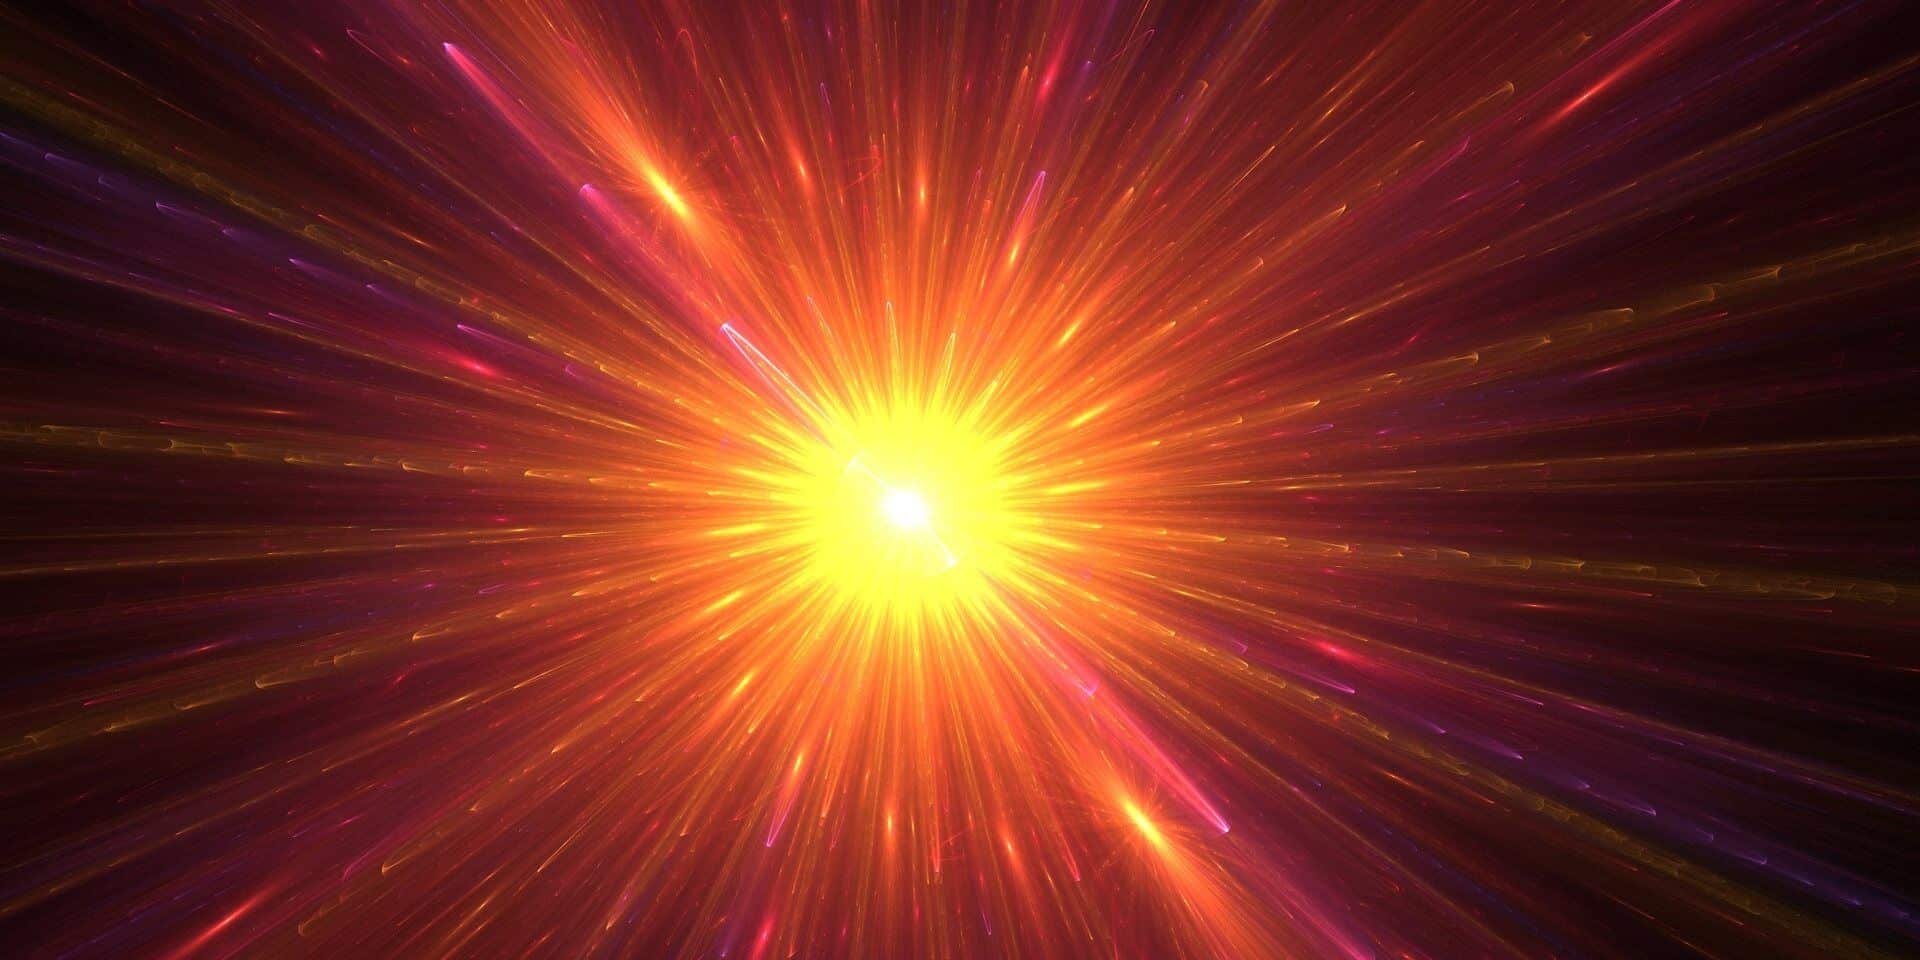 Kara Delikler Supernova